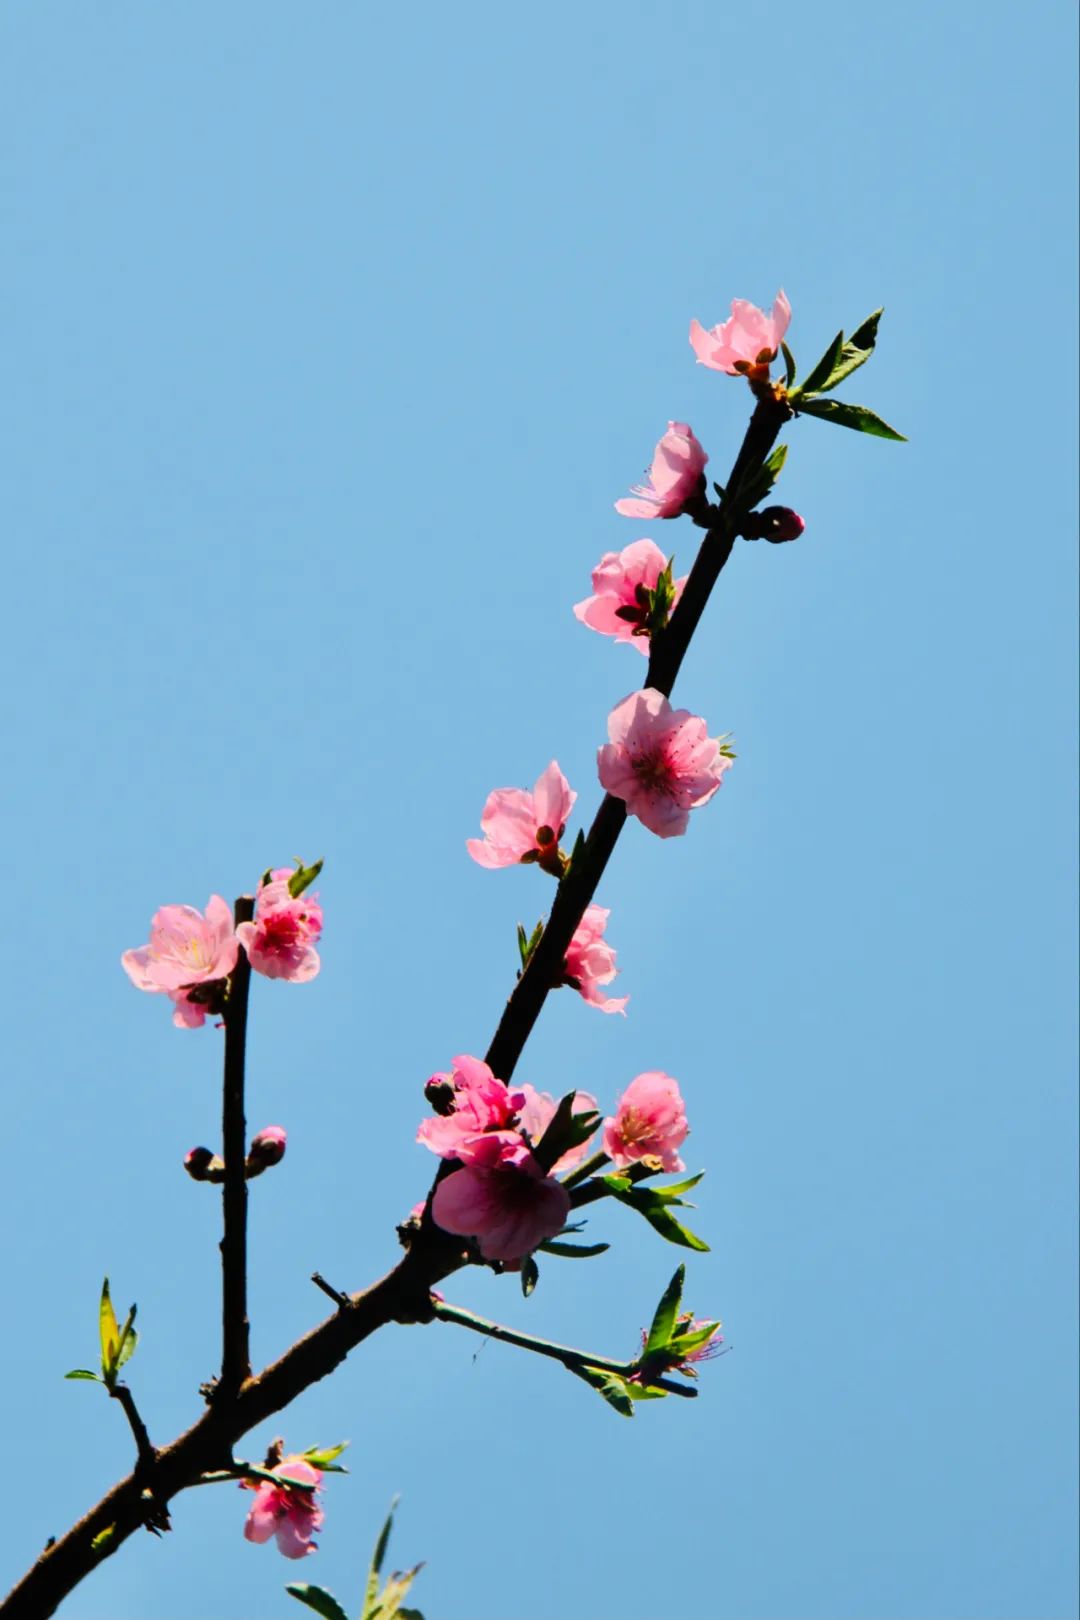 春天的诗文有哪些-歌颂春天的诗朗诵